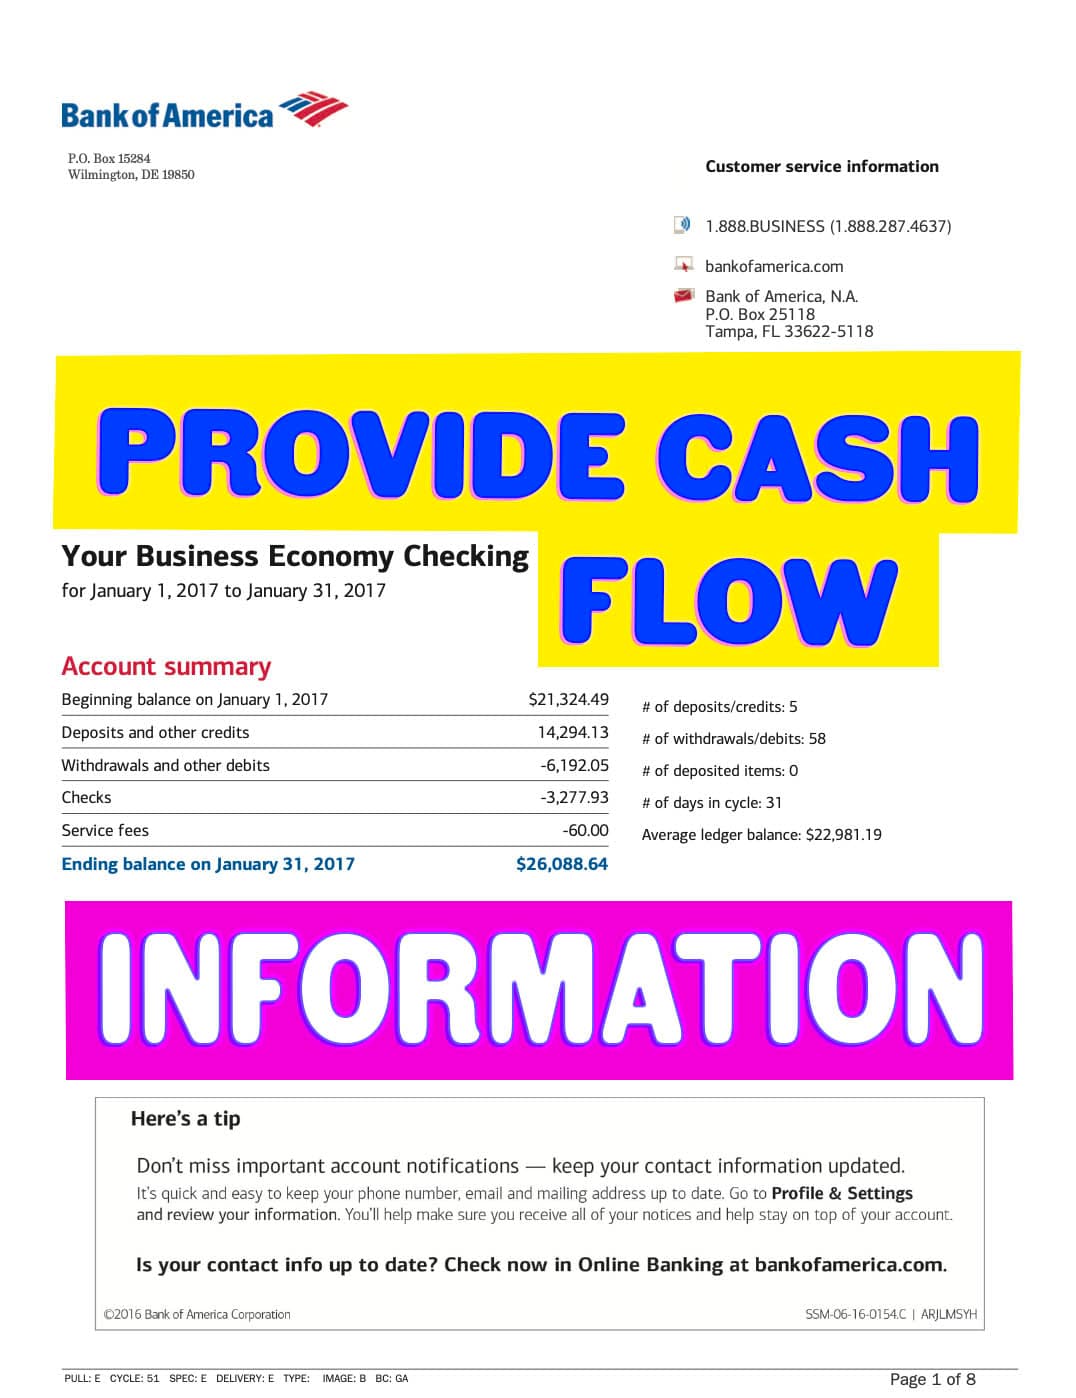 provide cash flow information